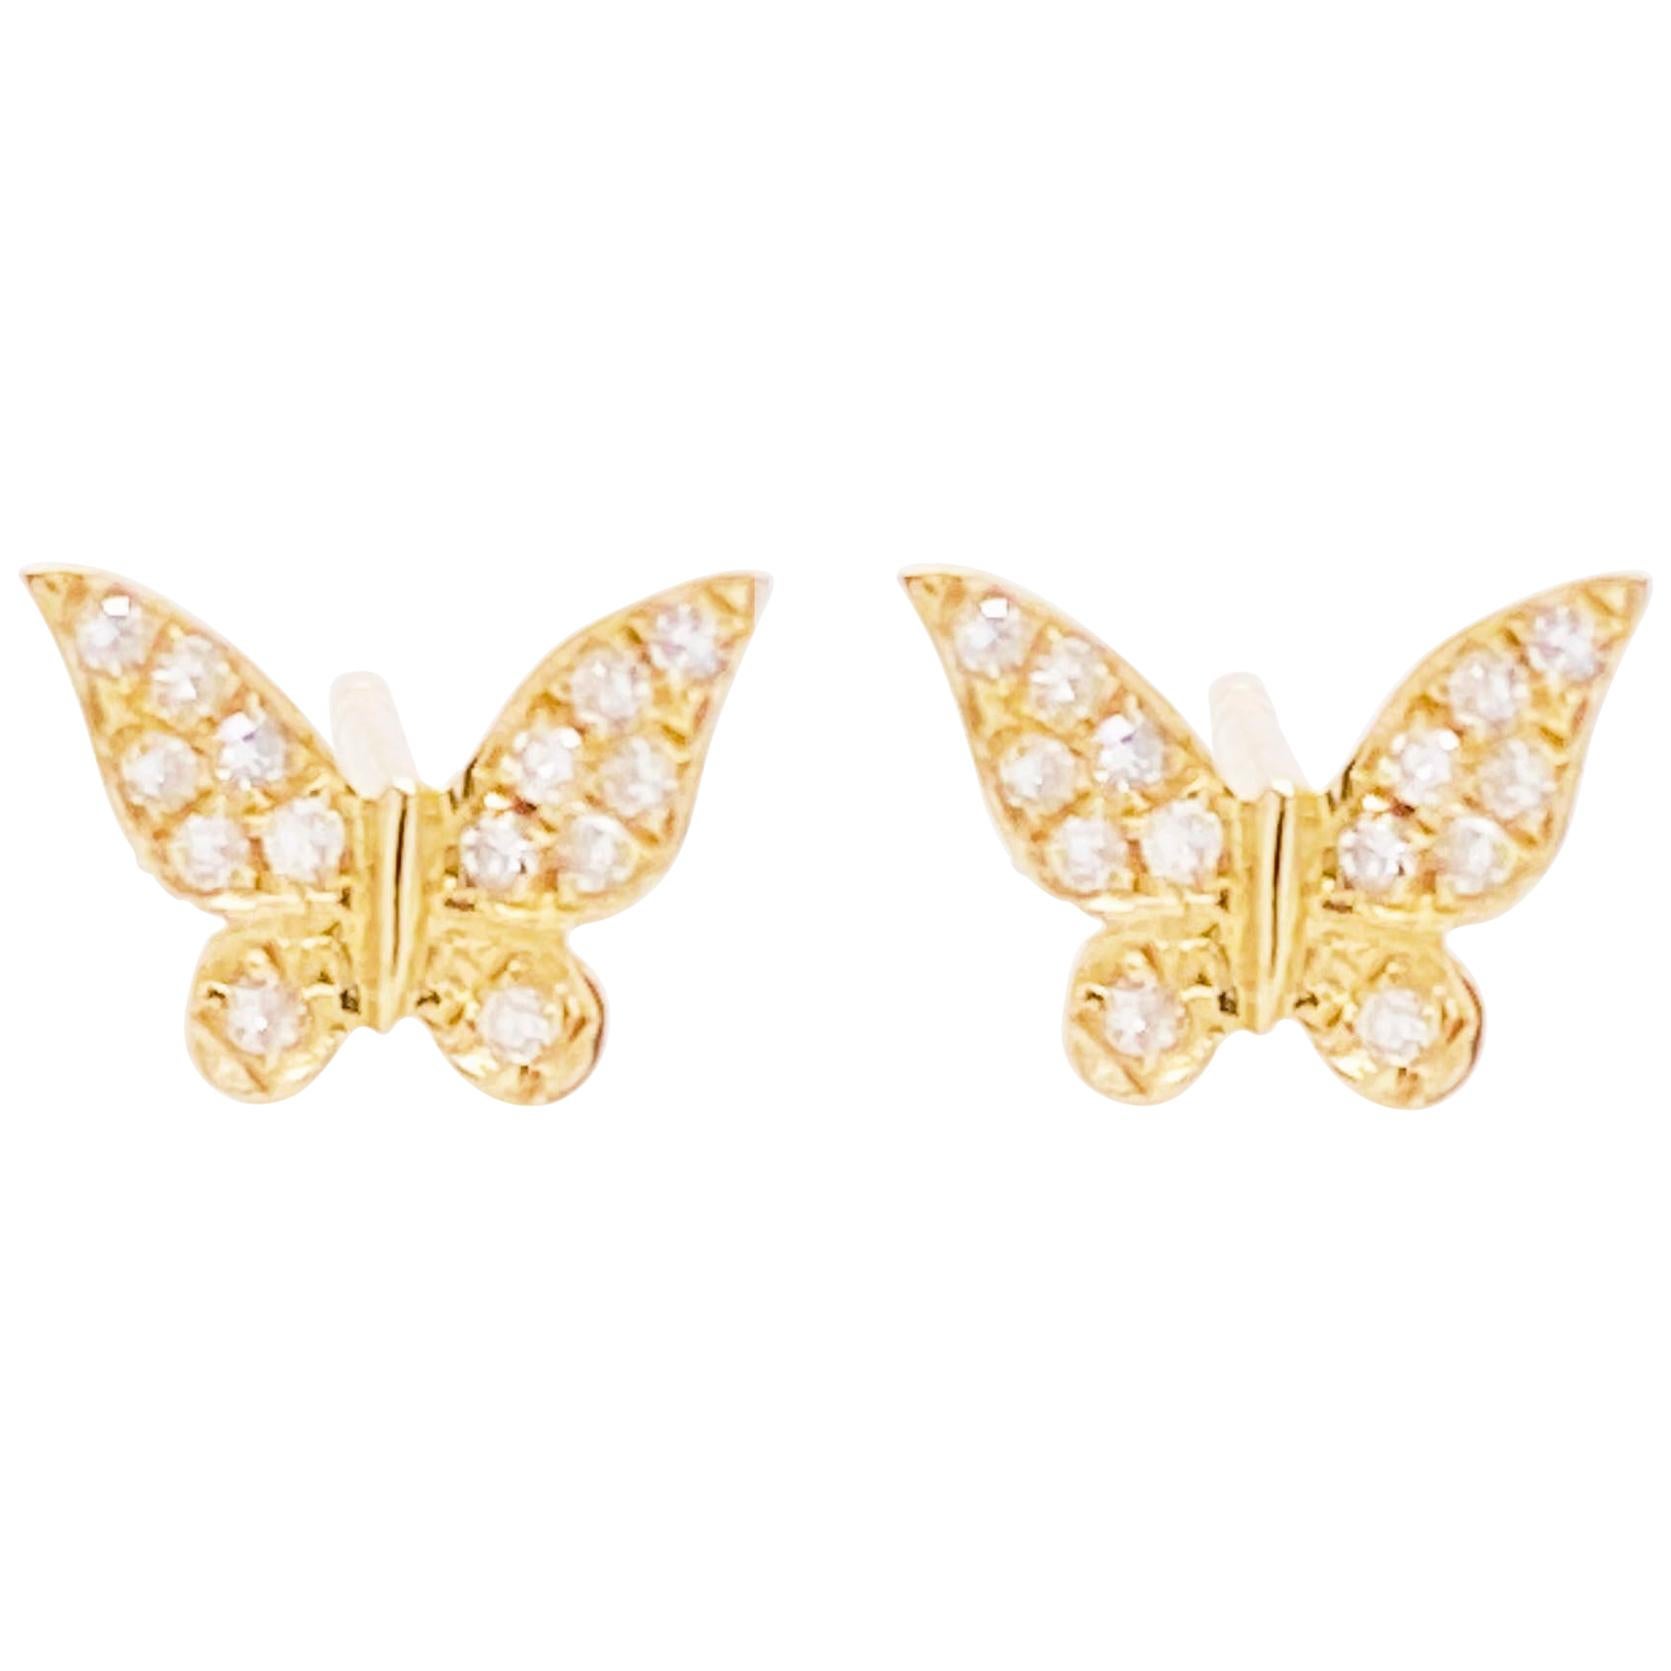 Diamond Butterfly Earrings, 14 Karat Yellow Gold Diamond Stud Earrings, Nature